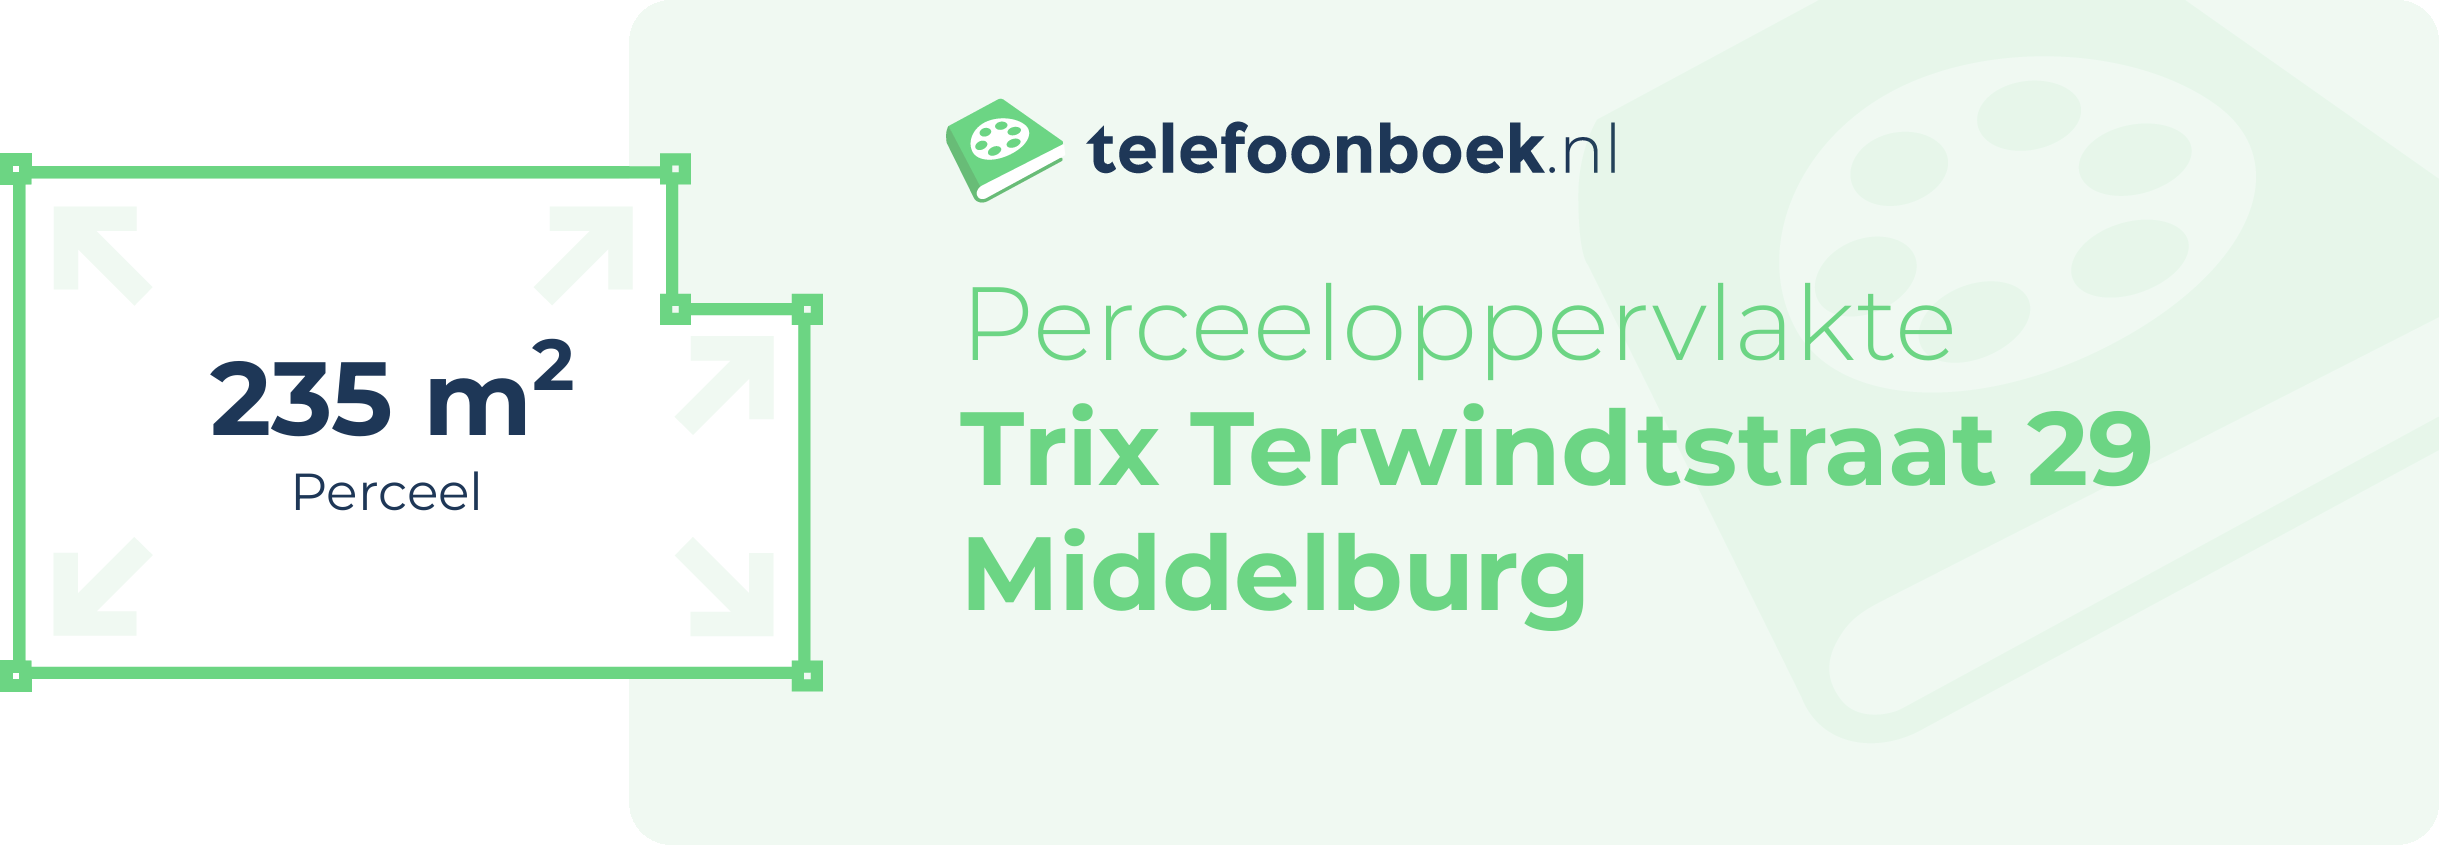 Perceeloppervlakte Trix Terwindtstraat 29 Middelburg